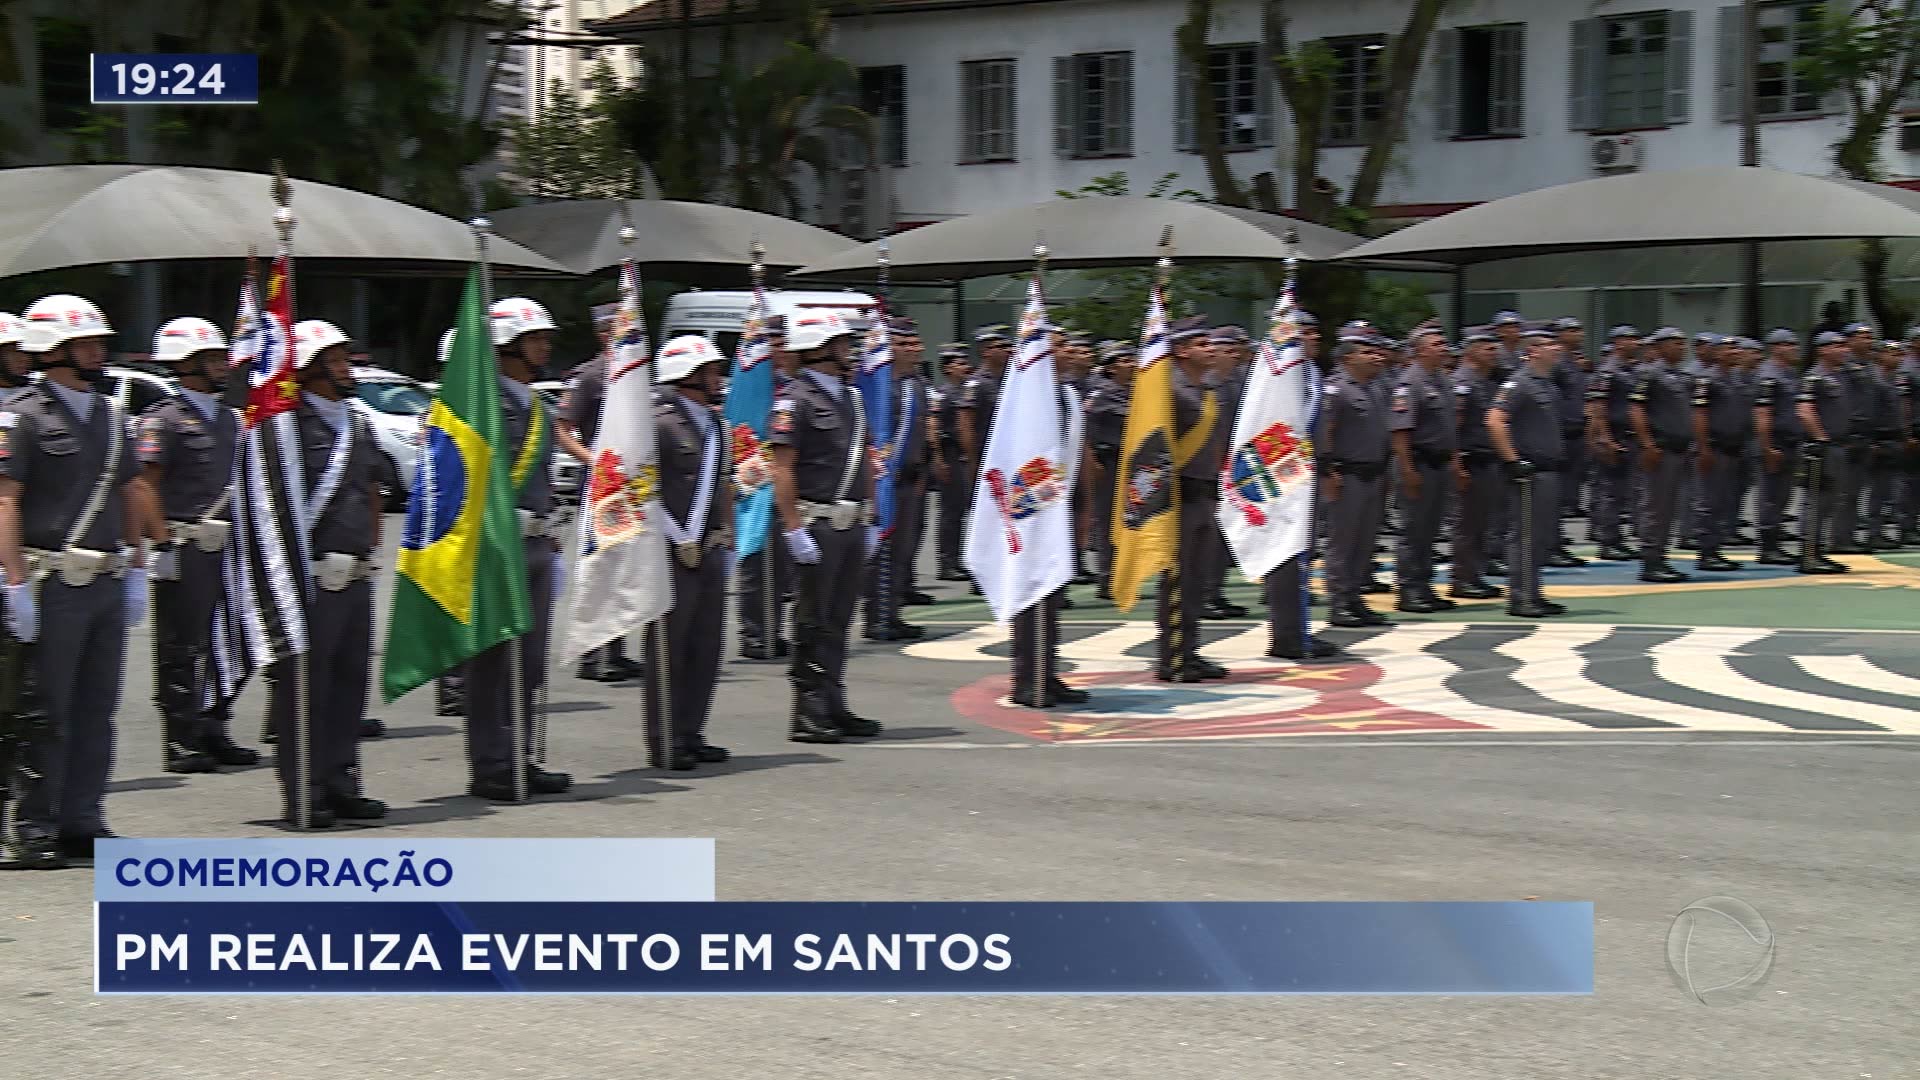 Vídeo: A Polícia Militar da Baixada Santista está em festa